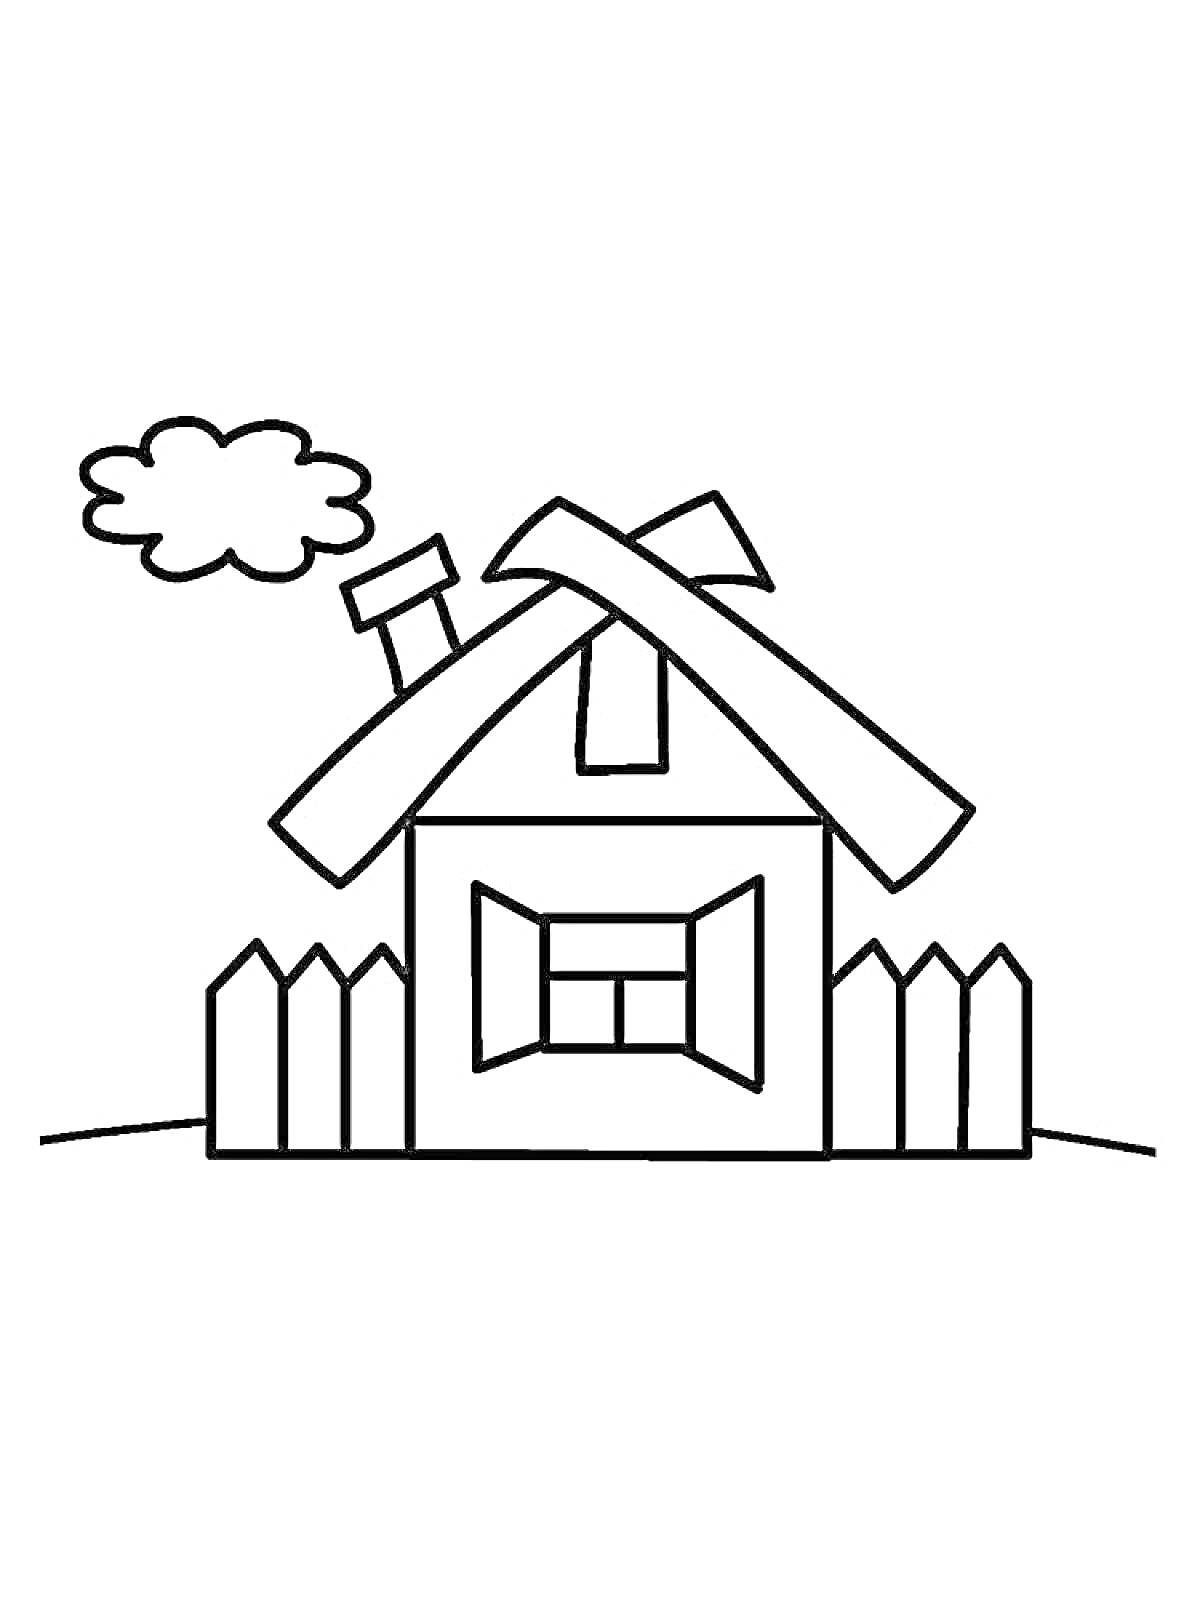 Раскраска Изба с трубой на крыше, окном с наличниками и забором, на фоне облако